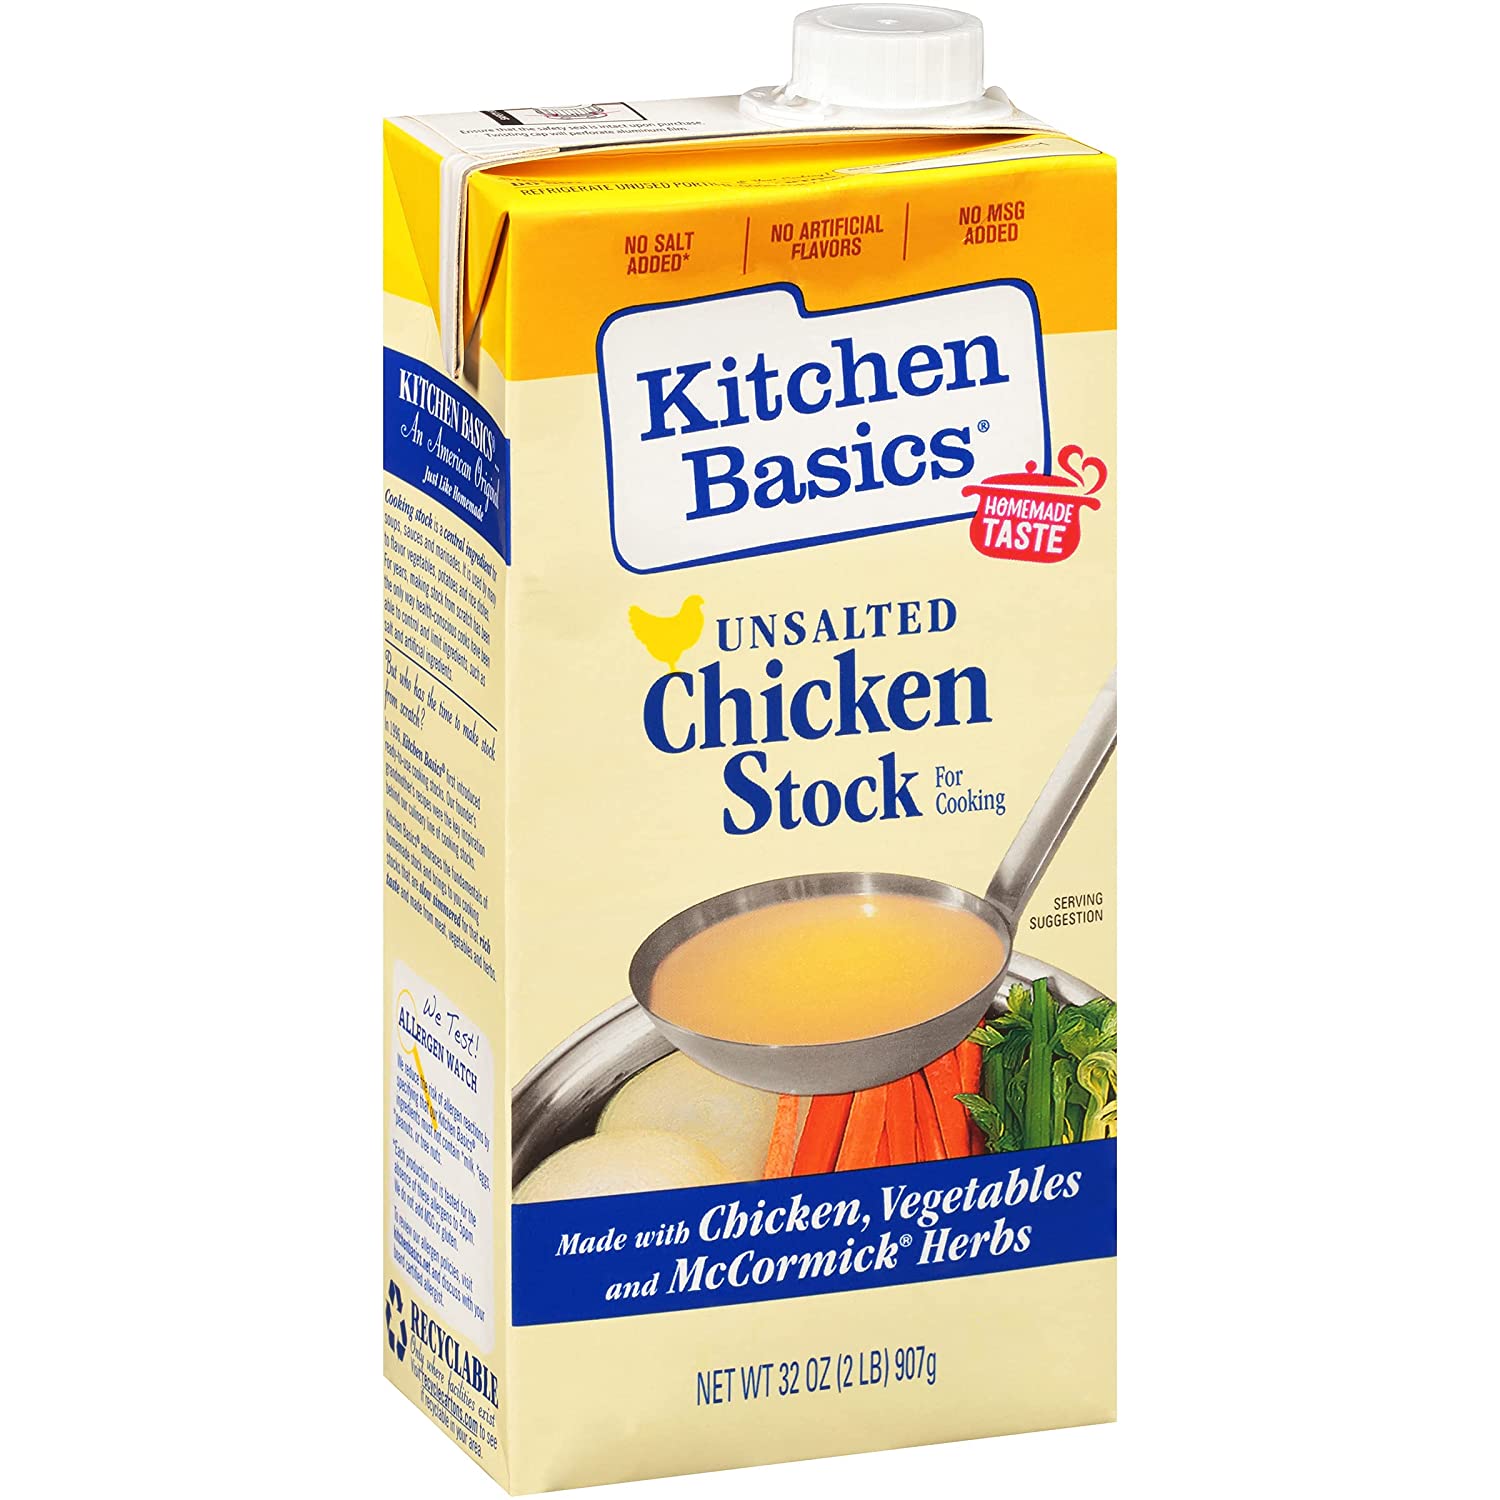 Kitchen Basics Unsalted Chicken Stock, 32 fl oz $1.36